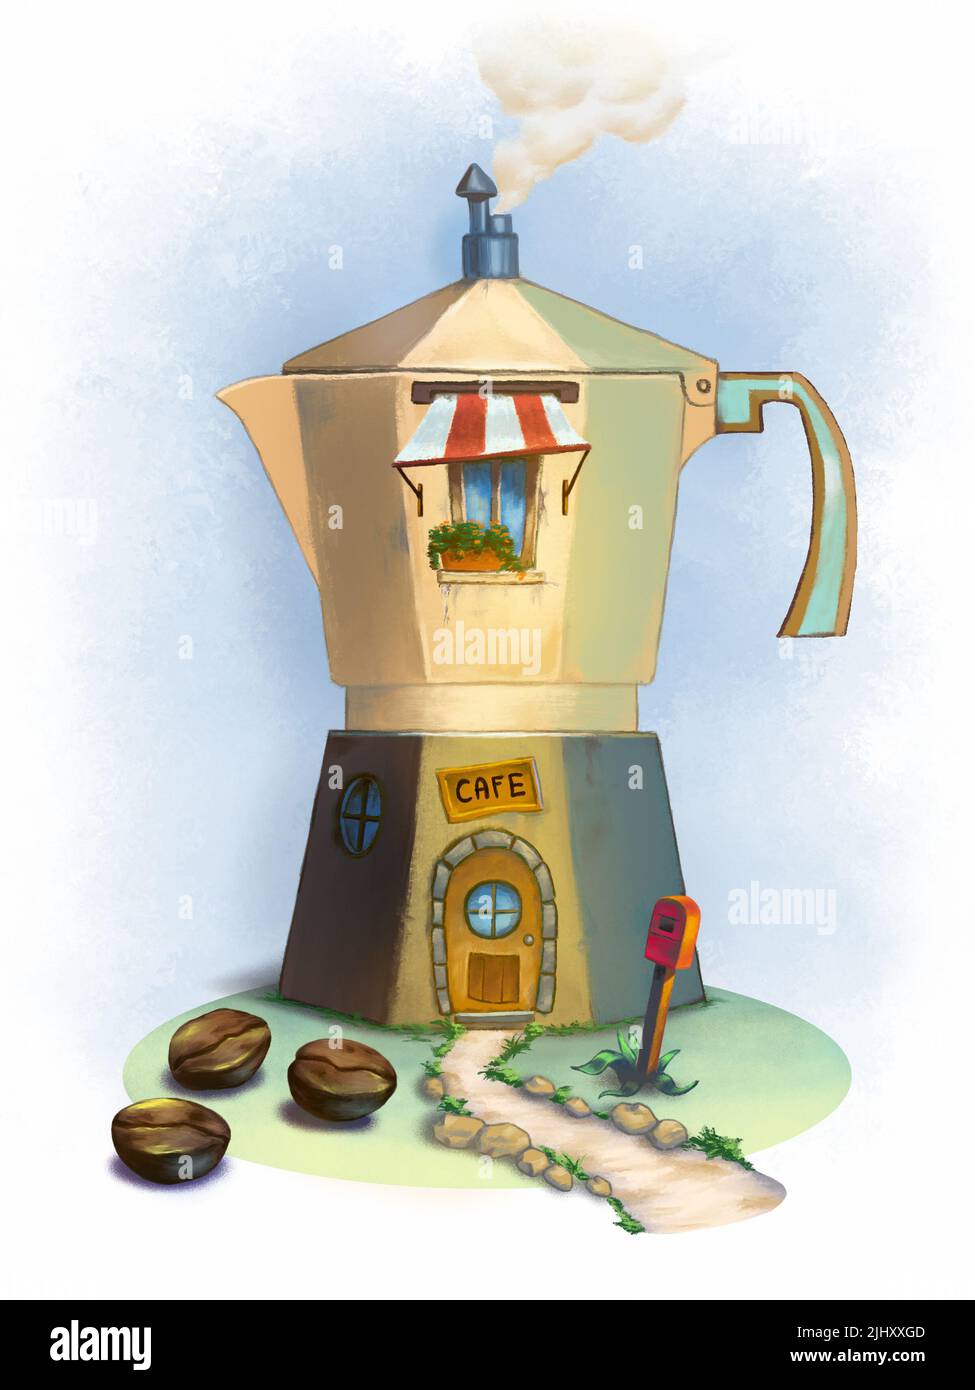 Edificio en forma de máquina de café moka. Ilustración digital. Foto de stock